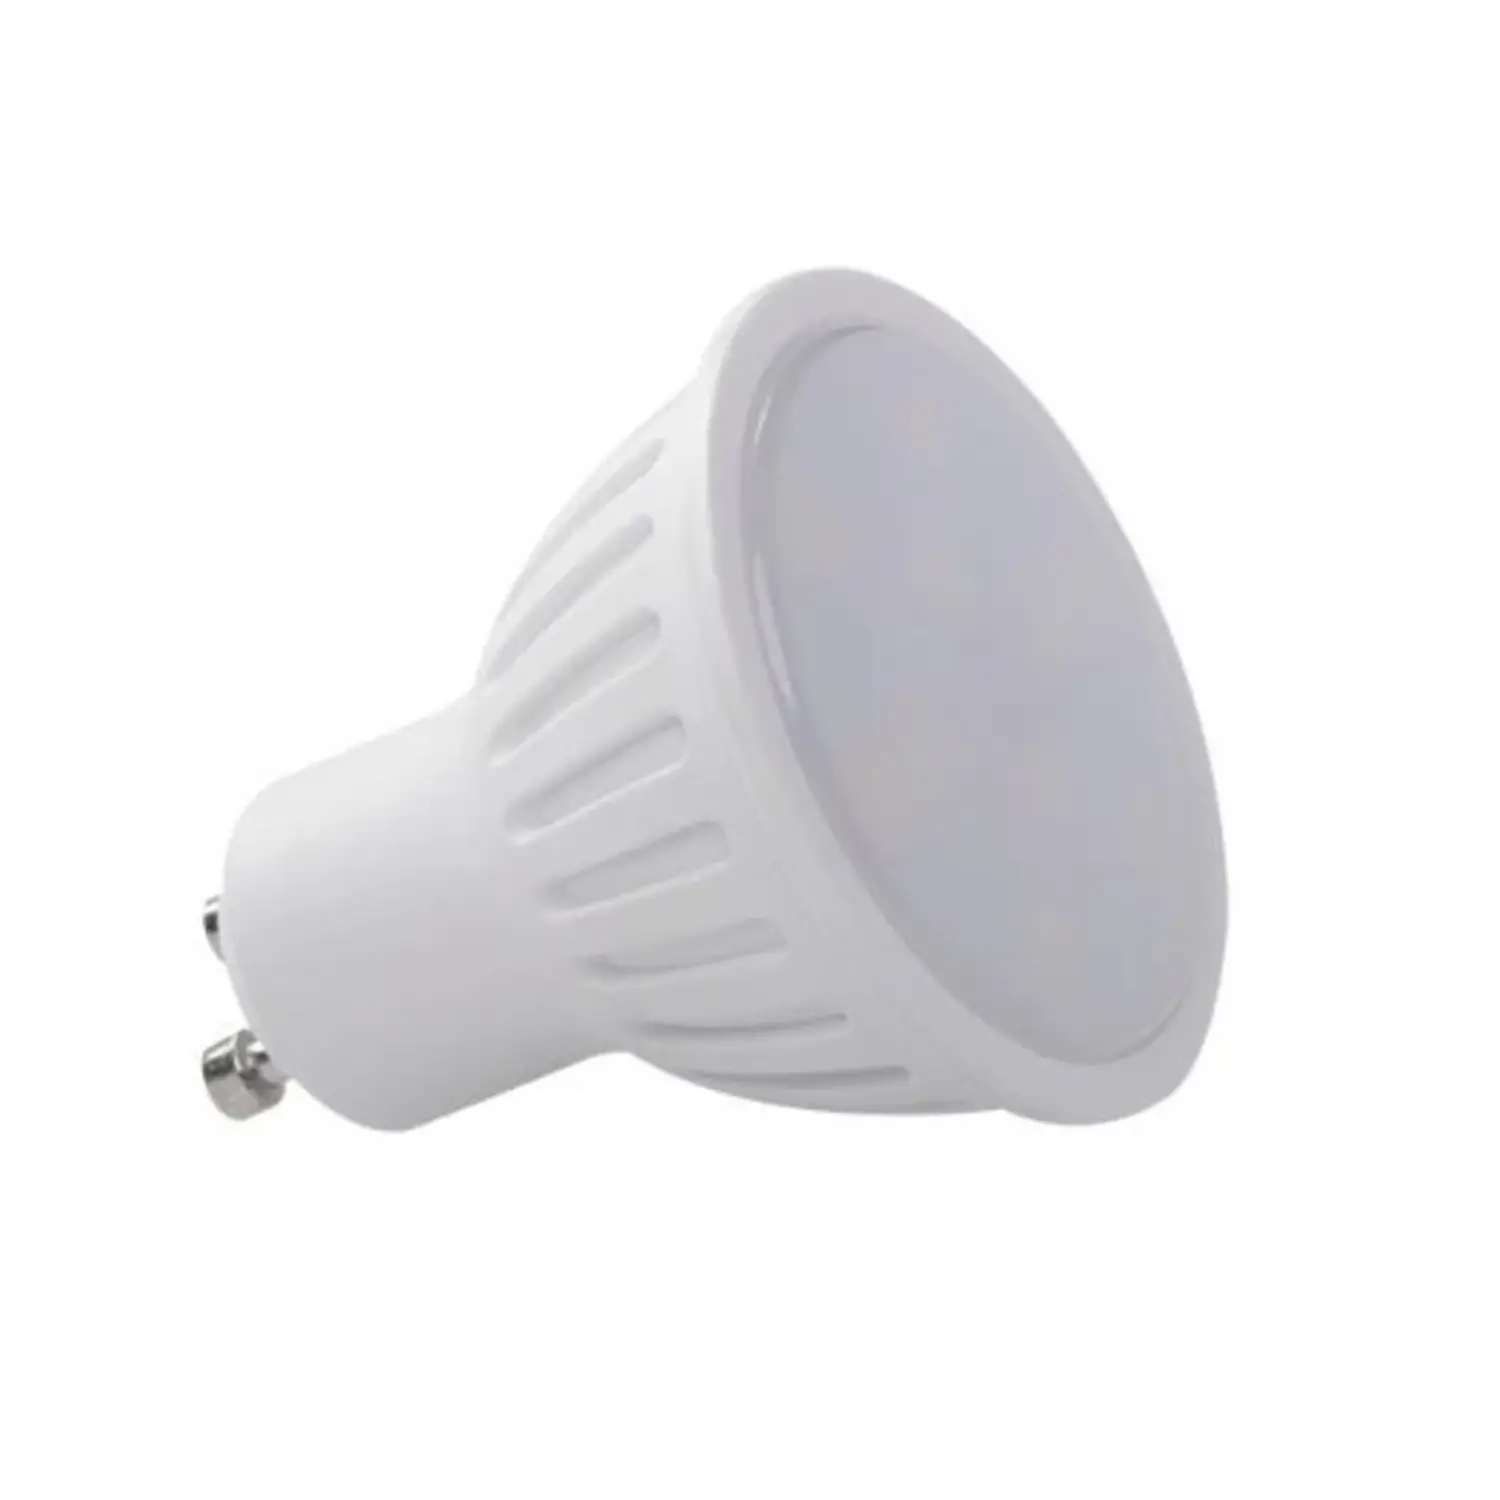 immagine del prodotto lampadina led lampada tomi faretti gu10 3 watt bianco caldo